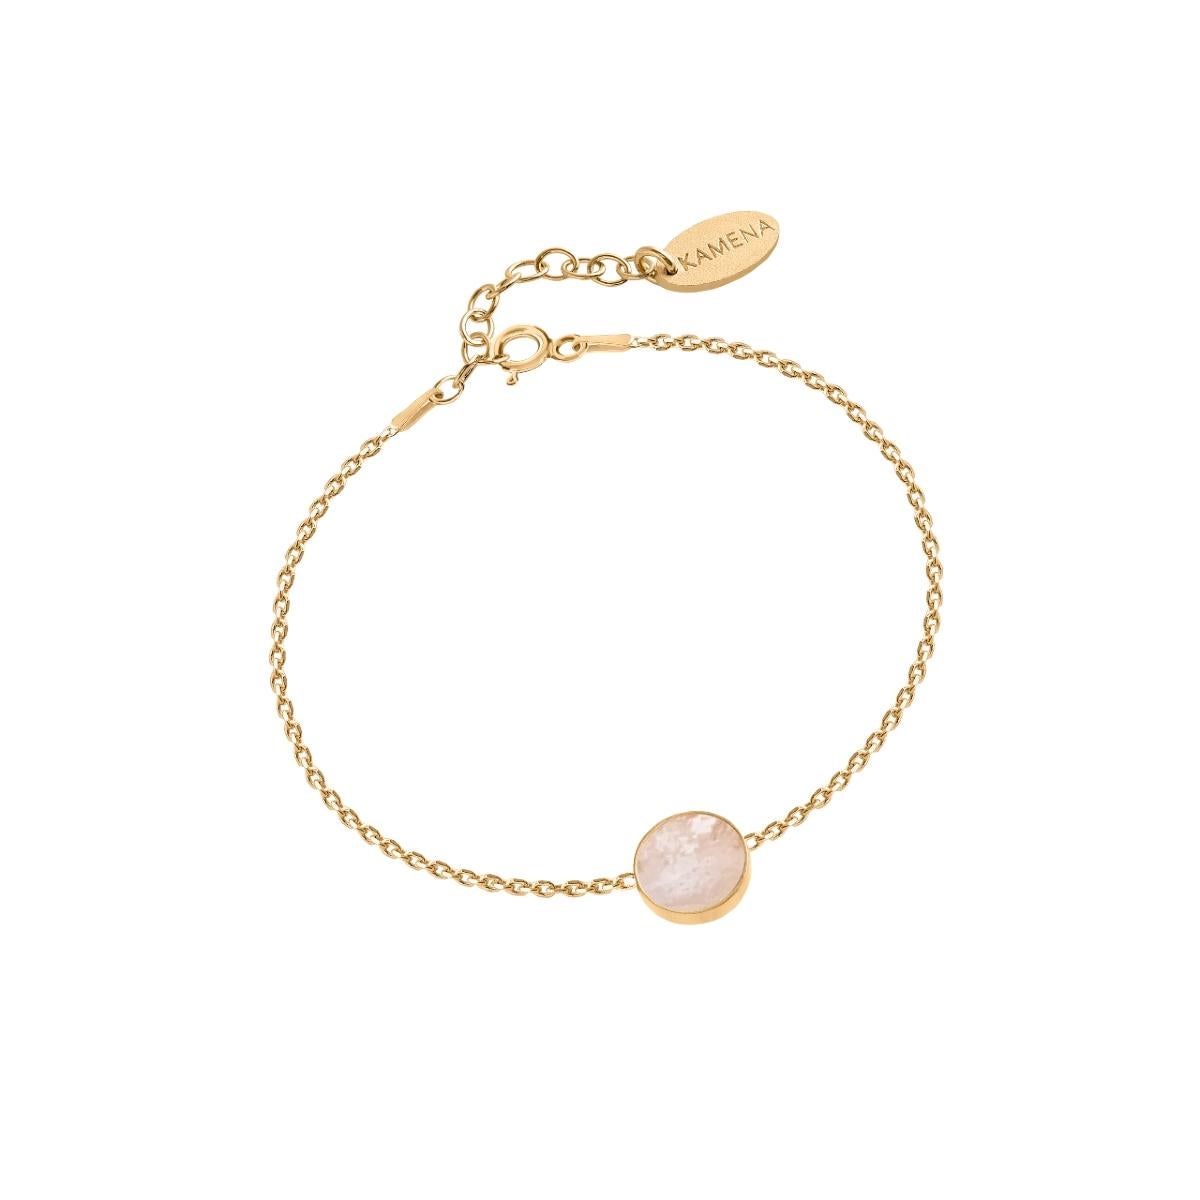 Dieses Armband mit einem weißen Stein an einer zarten Goldkette ist ein schöner Schmuck für Ihr Handgelenk. Sein minimalistisches Design ermöglicht es Ihnen, ihn zu praktisch jedem Outfit zu tragen. Er eignet sich sowohl für elegante Ausflüge als